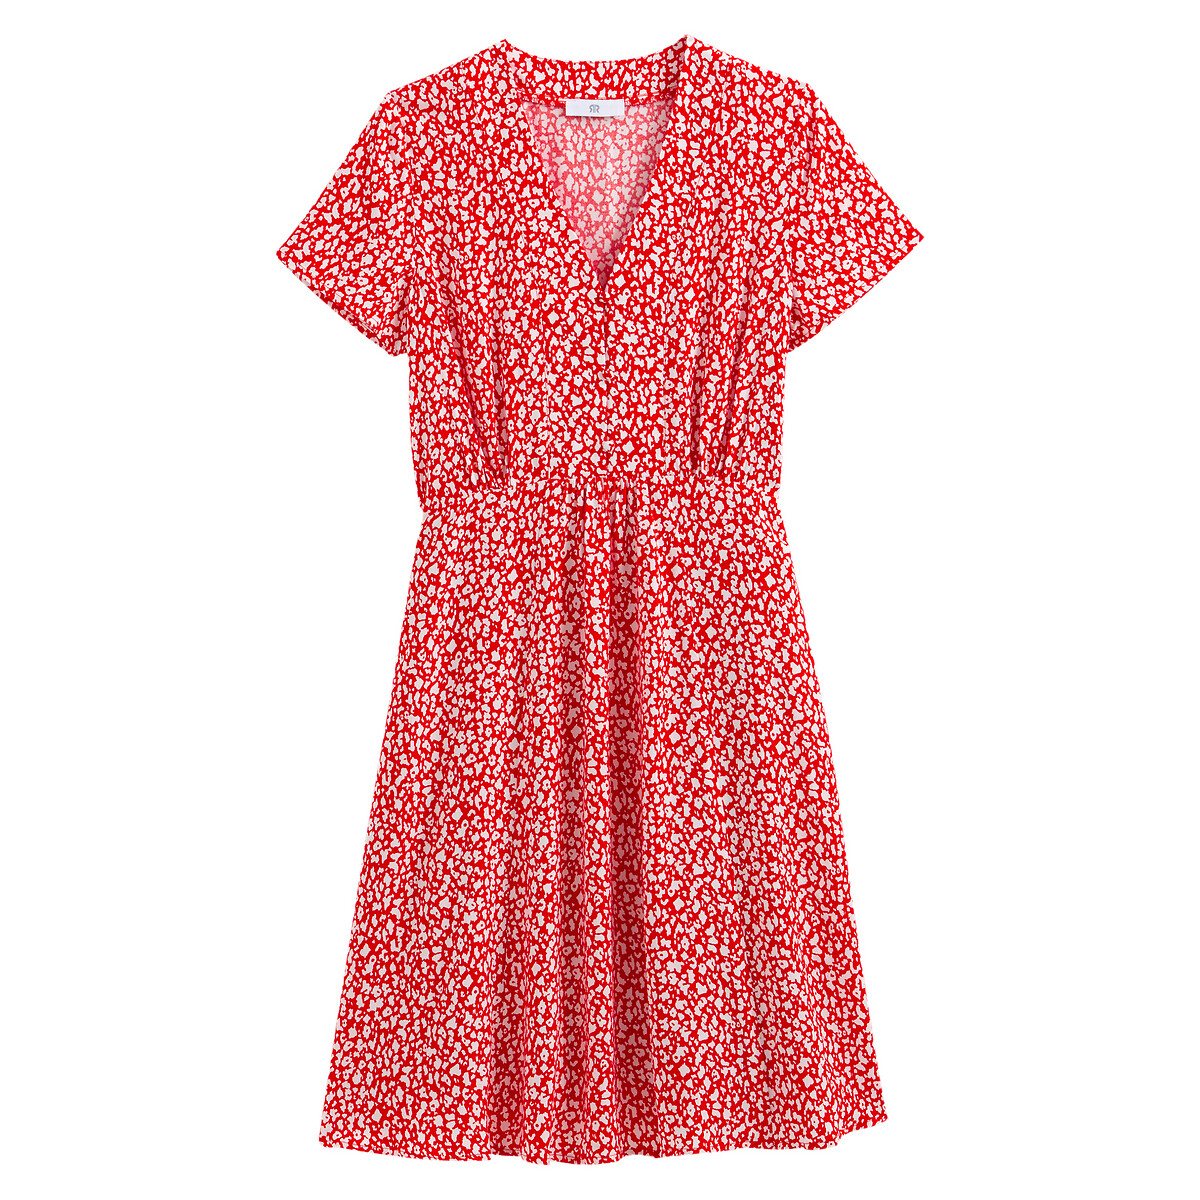 Платье LaRedoute С V-образным вырезом короткими рукавами с принтом 50 (FR) - 56 (RUS) красный, размер 50 (FR) - 56 (RUS) С V-образным вырезом короткими рукавами с принтом 50 (FR) - 56 (RUS) красный - фото 5